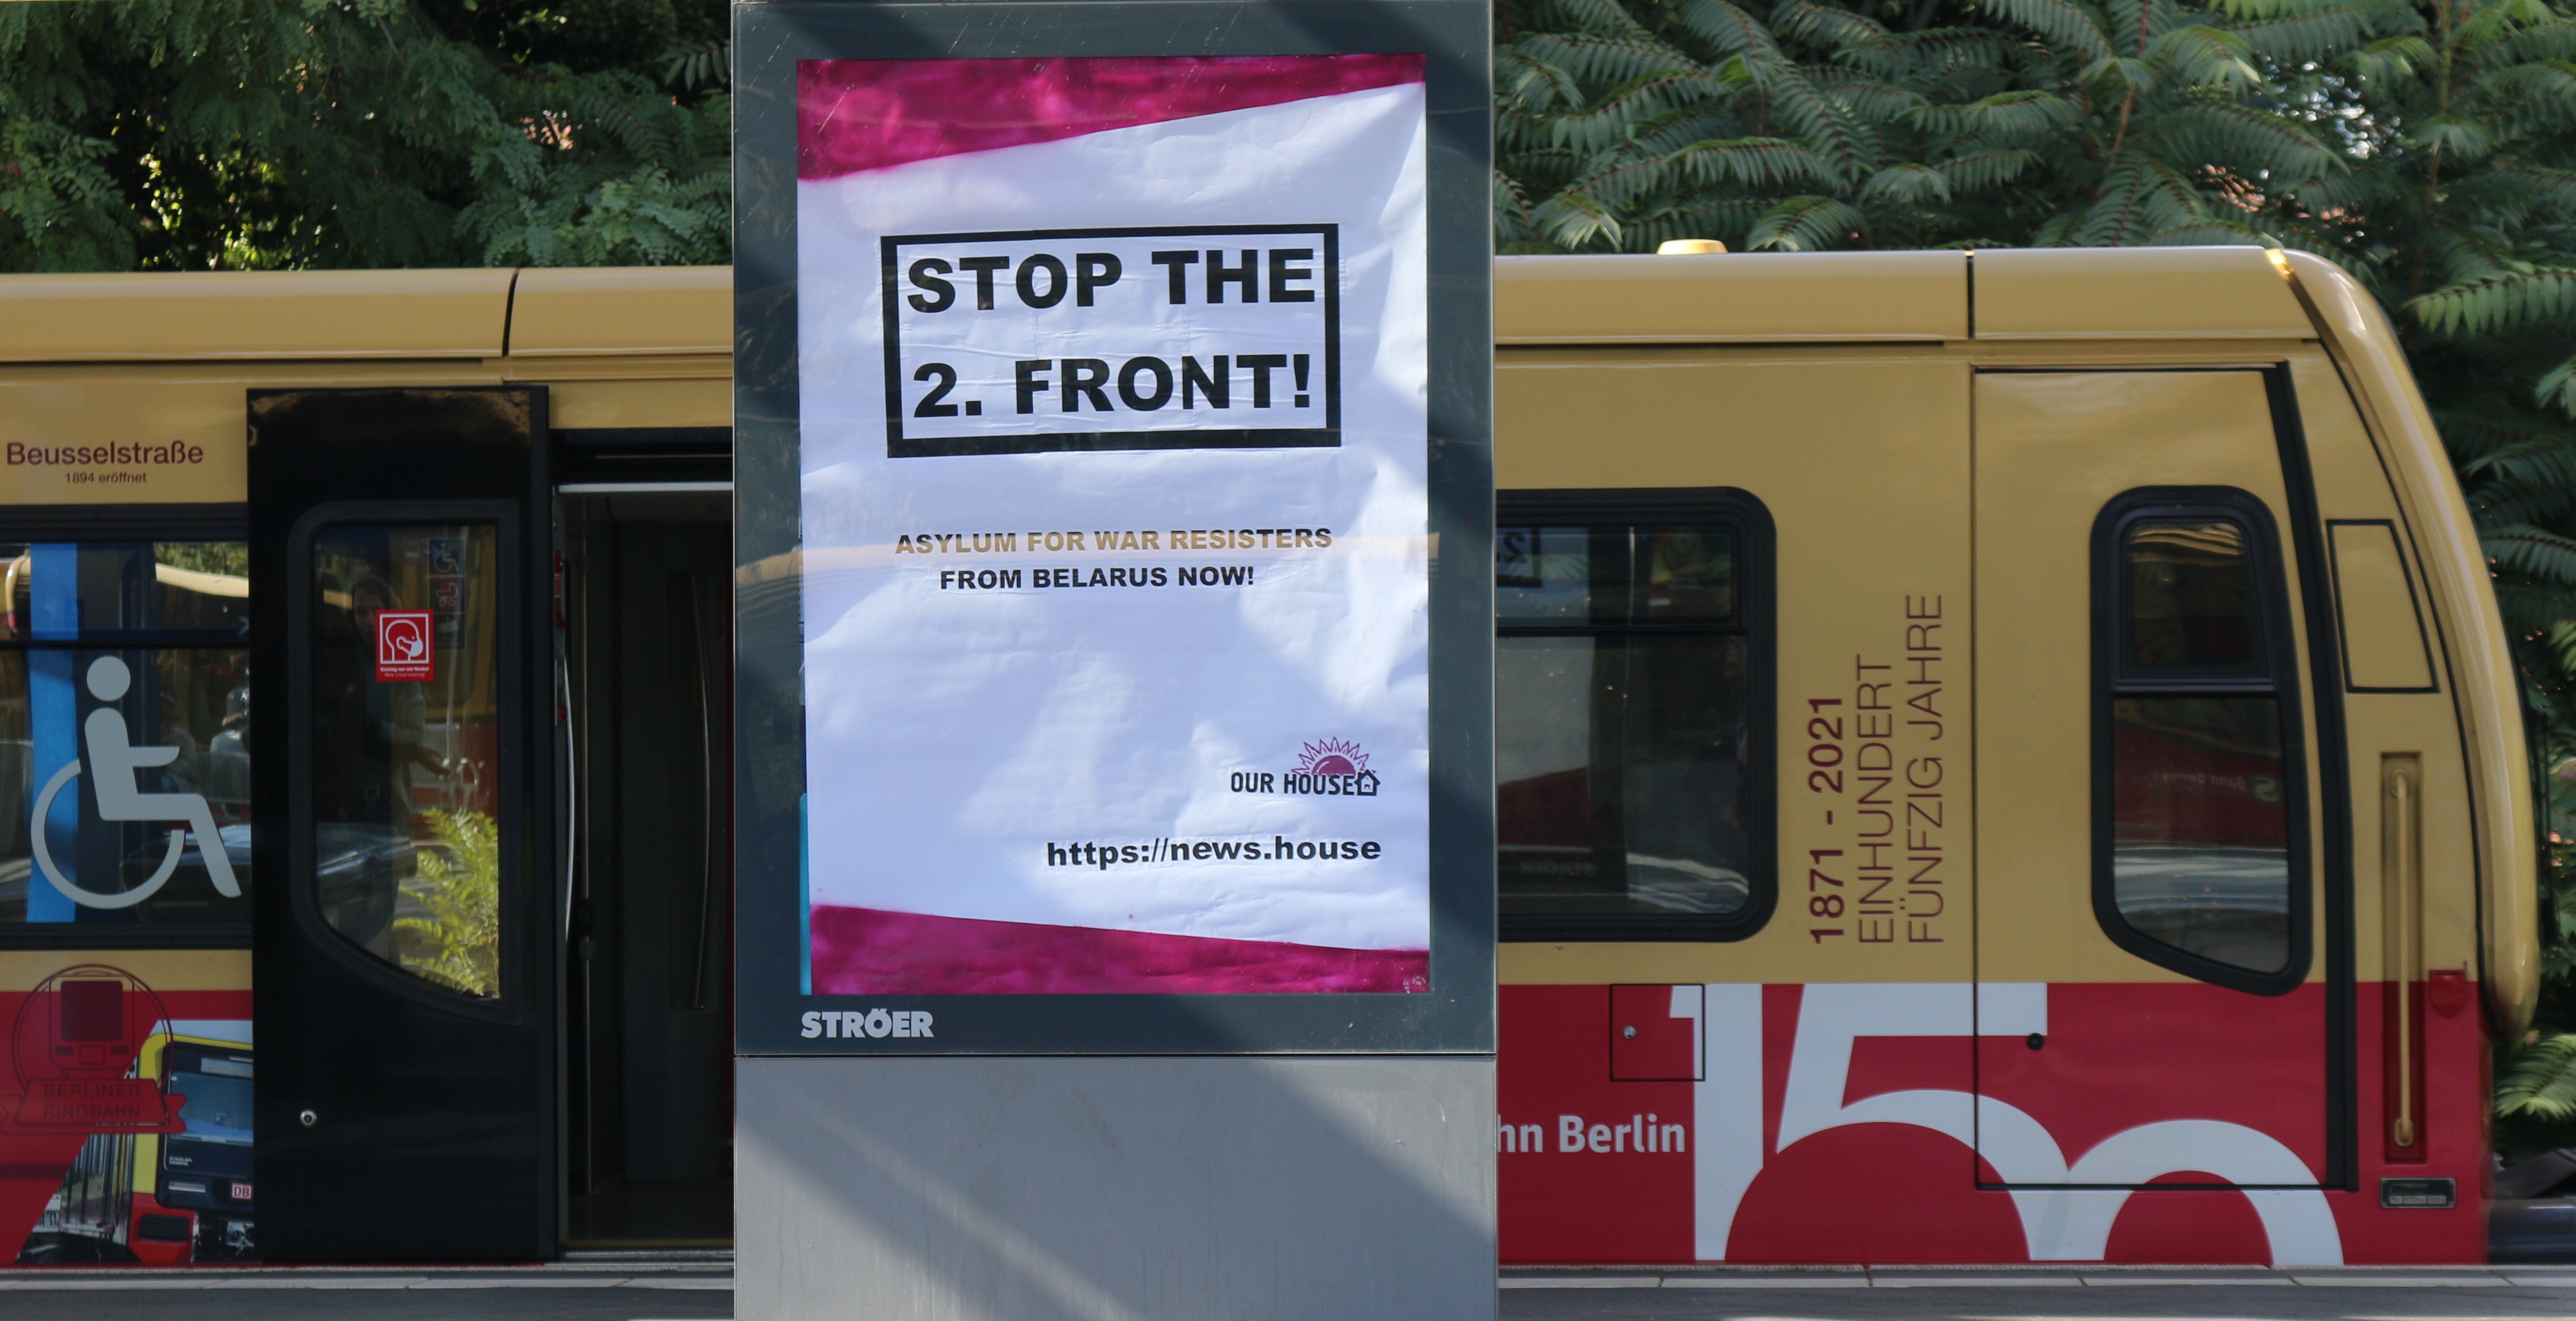 Poster-Aktion von Nash Dom zur Kampagne "Stoppt die zweite Front". Quelle: taz: https://blogs.taz.de/streetart/2022/09/23/solidaritaet-fuer-belarussische-wehrverweigerer/